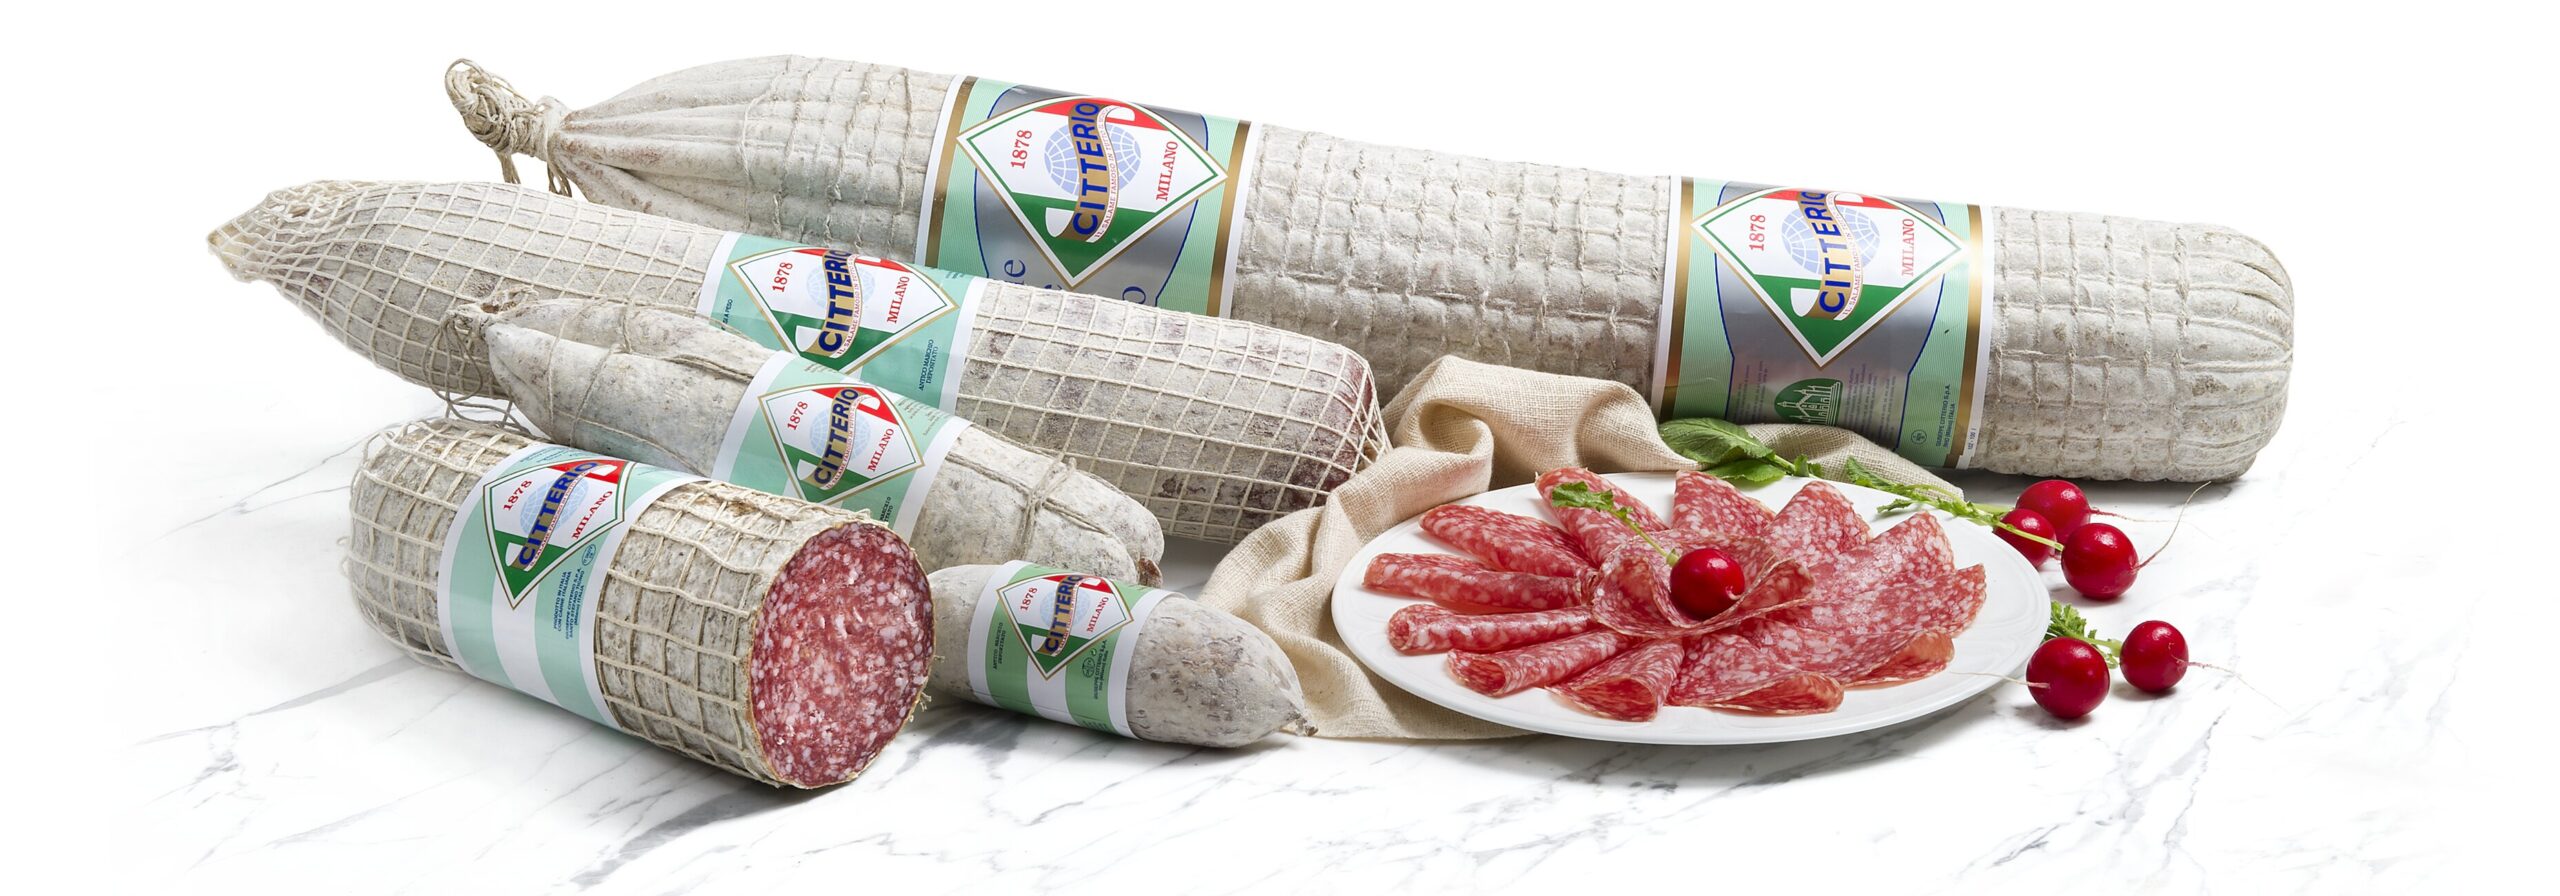 Produkten Lebensmittelimport von | Citterio Bonizzi AG Alberto